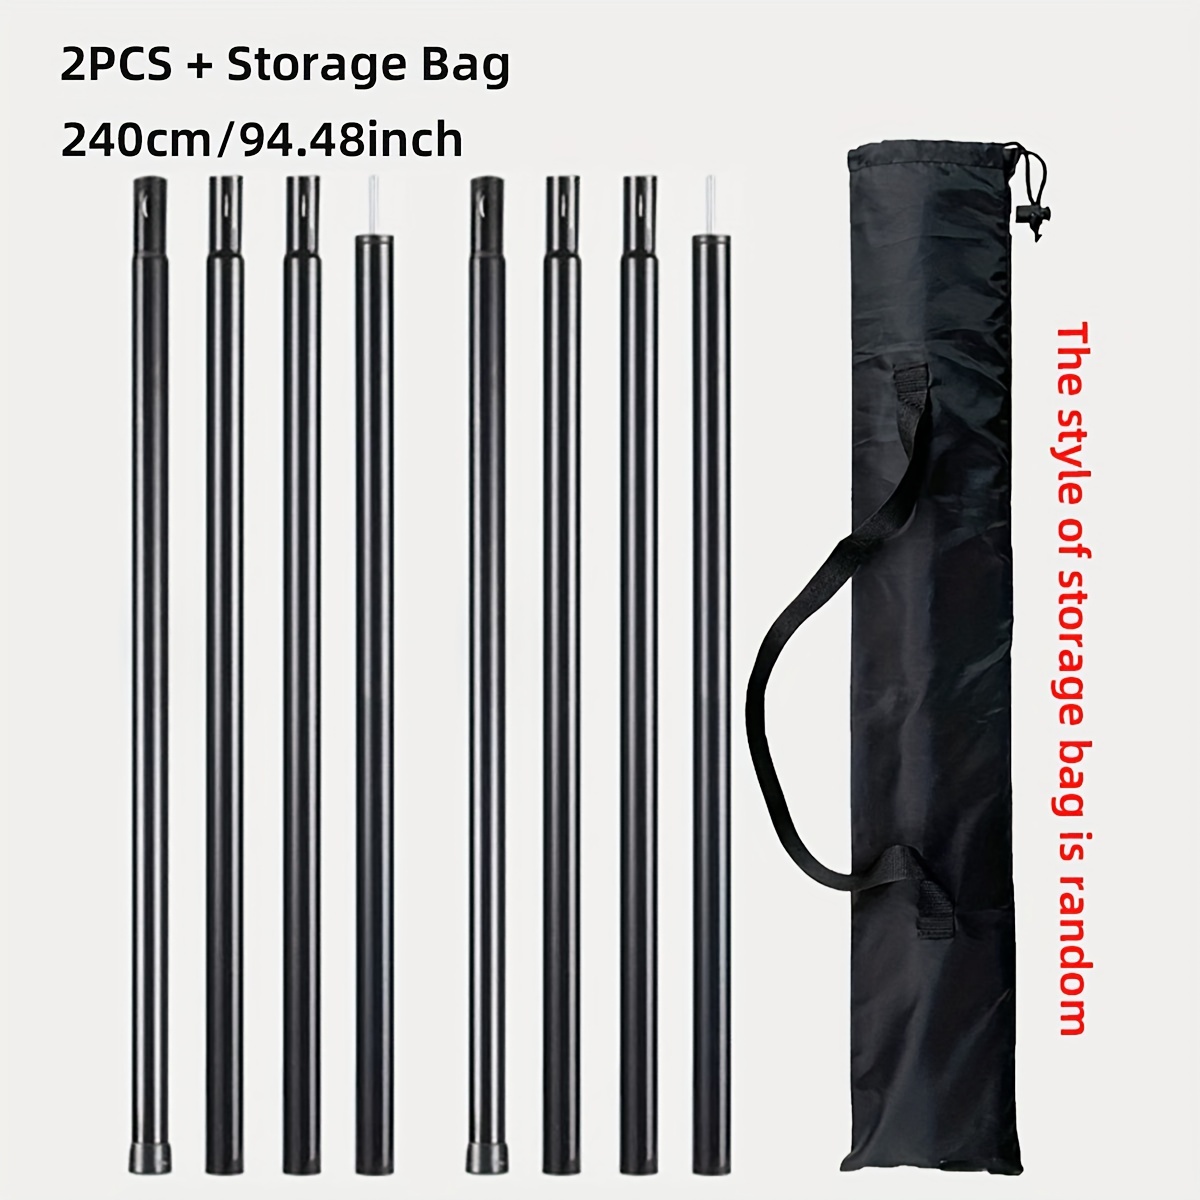 FRCOLOR 2PCS Outdoor Tent Pole Storage Bag Storage Pouch